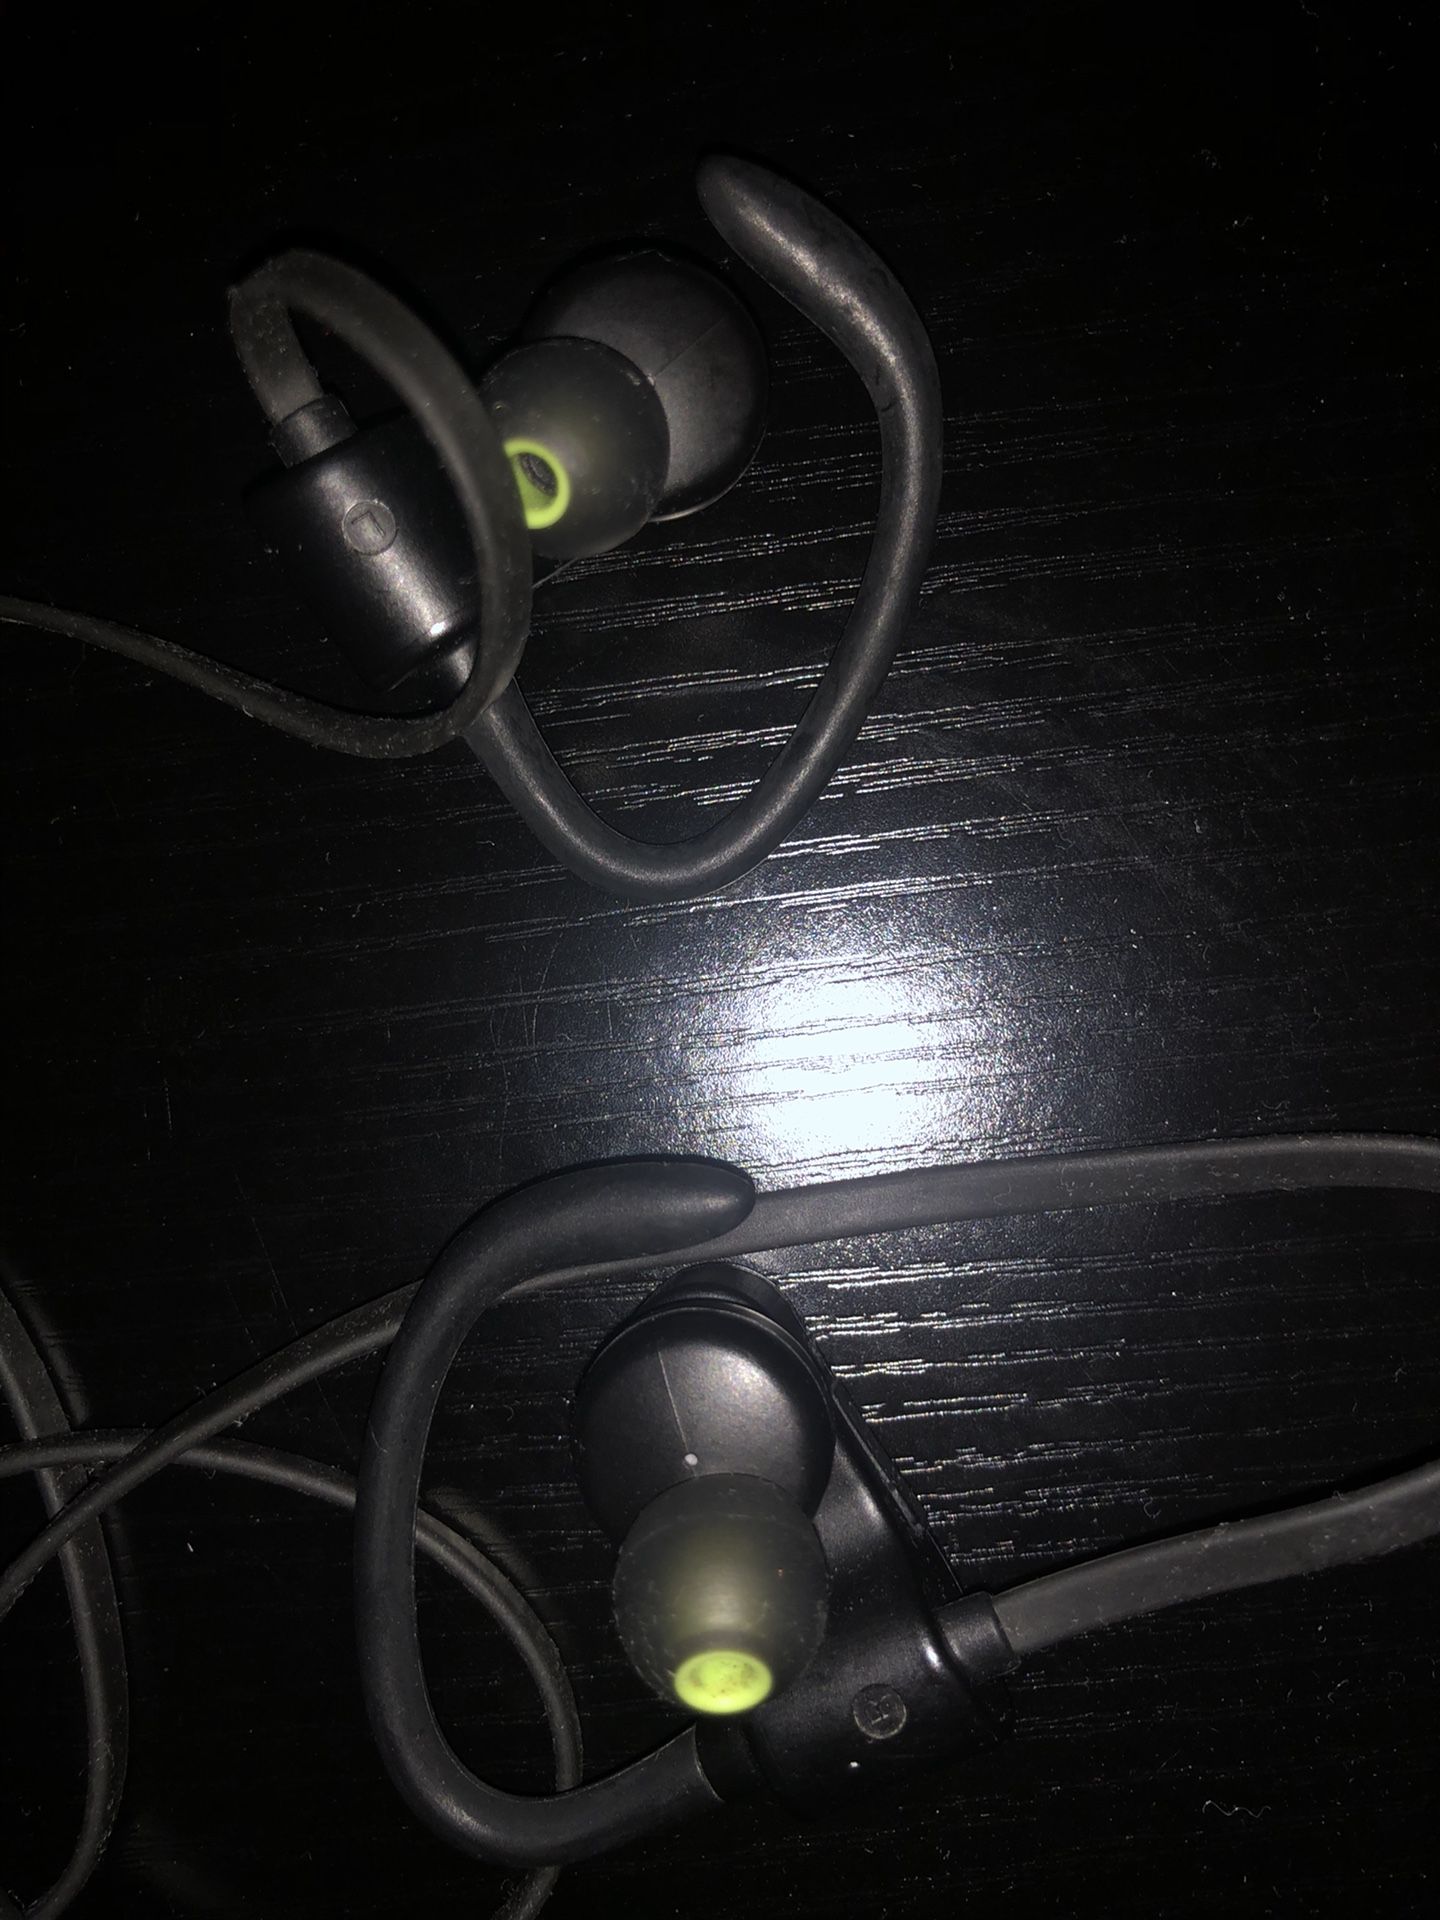 Beyution bluetooth headphones